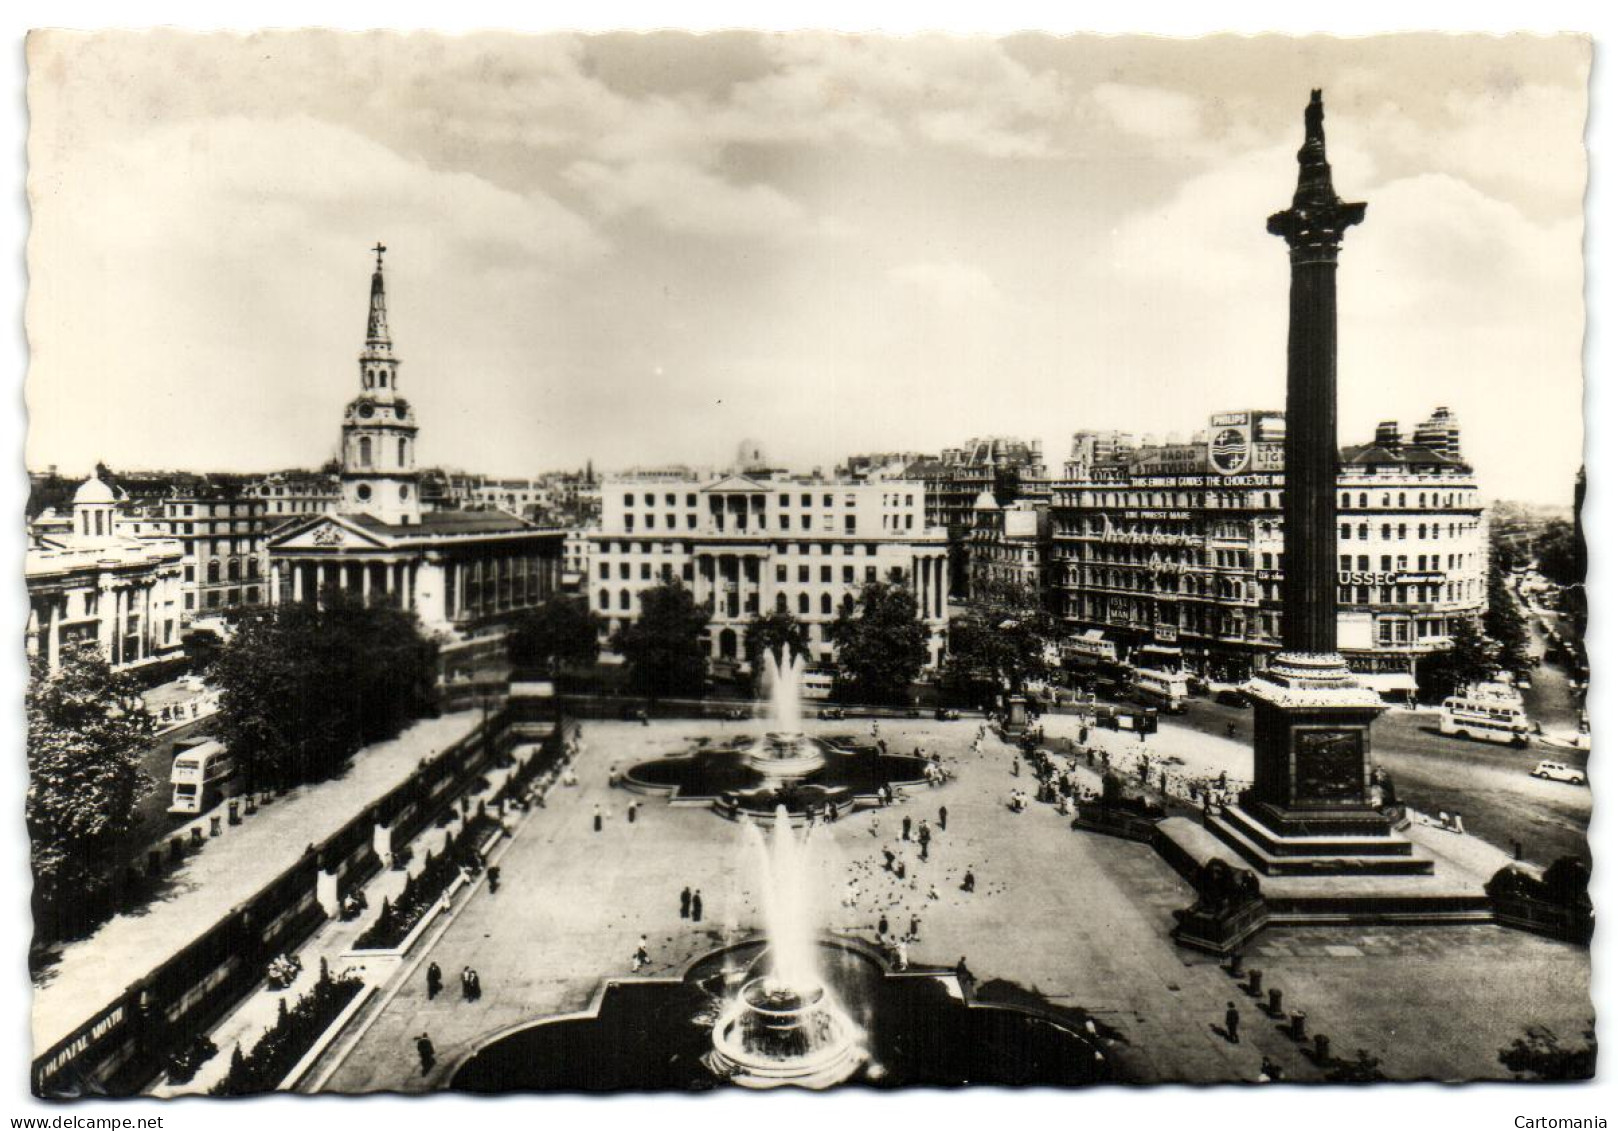 Trafalgar Square - London - Trafalgar Square